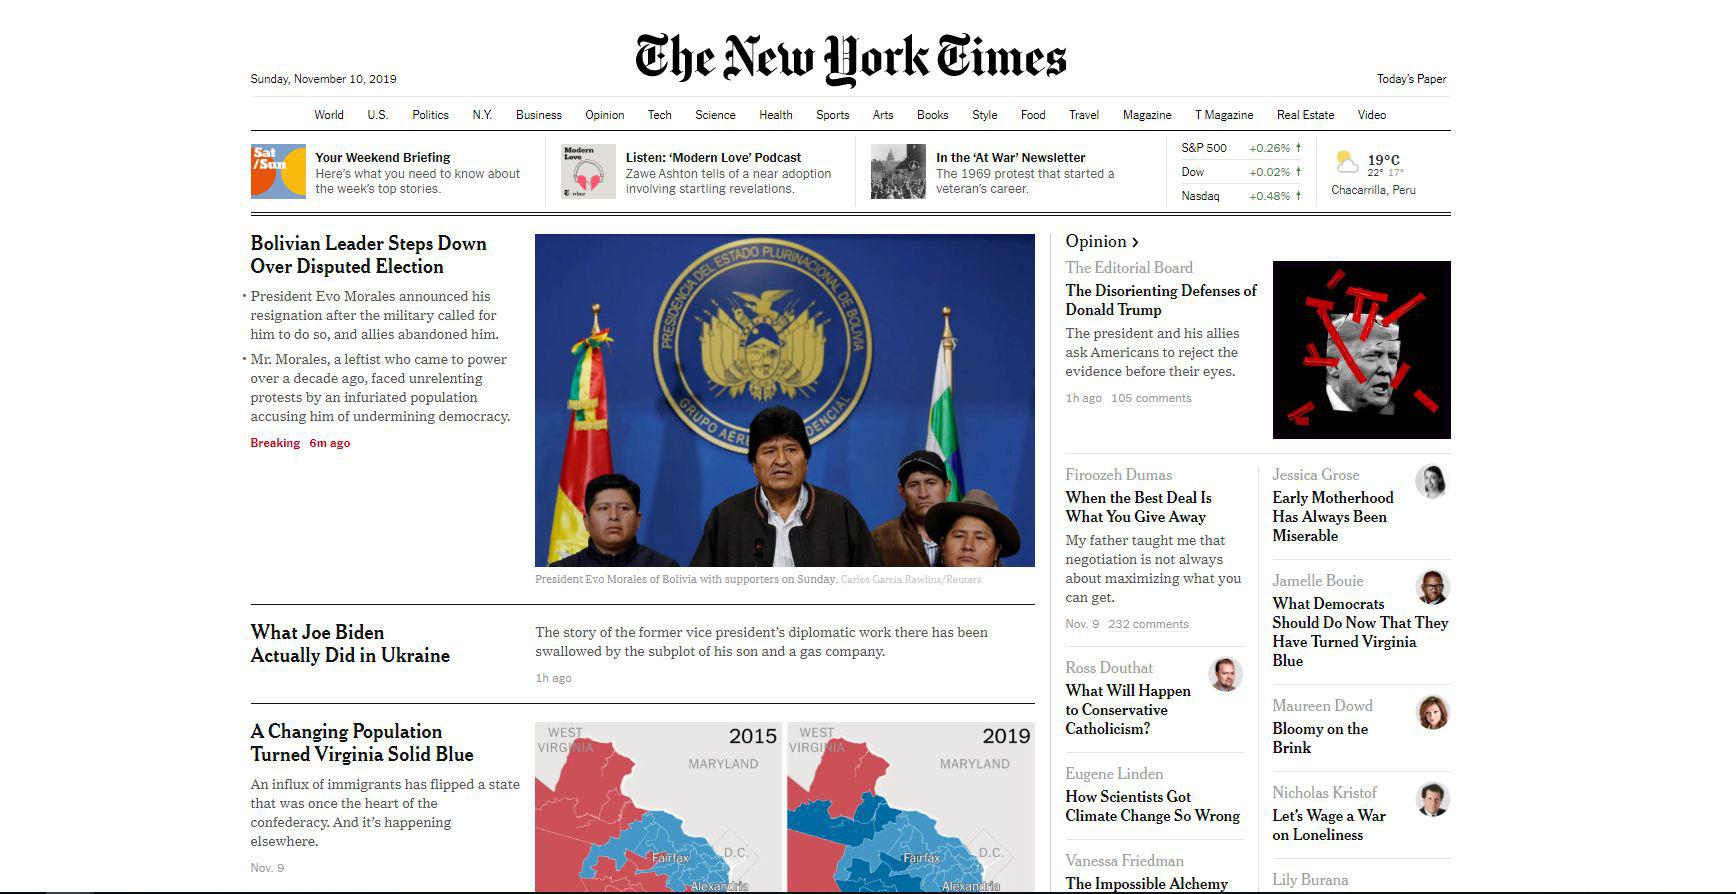 El presidente de Bolivia, Evo Morales, se recluyó este domingo en la zona cocalera de Chimoré, su cuna política en la región central de Cochabamba, para anunciar su renuncia, tras perder el apoyo de los militares y la policía. La noticia fue divulgada por medios de todo el mundo como el prestigioso diario estadounidense "The New York Times".